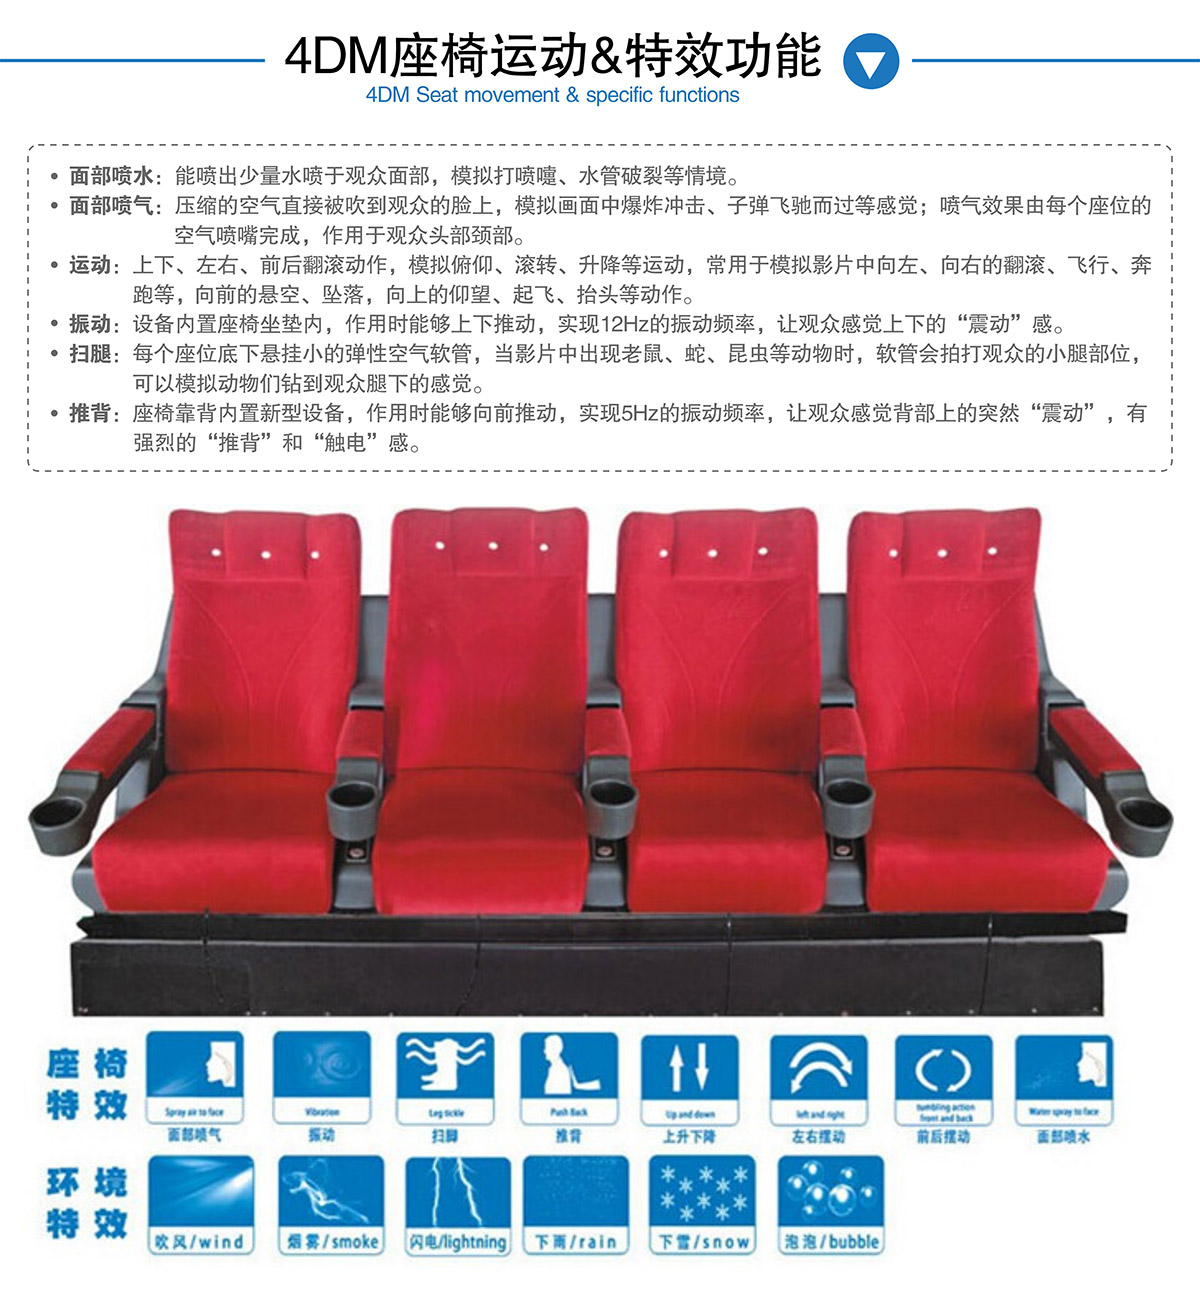 模拟体验4DM座椅运动和特效功能.jpg